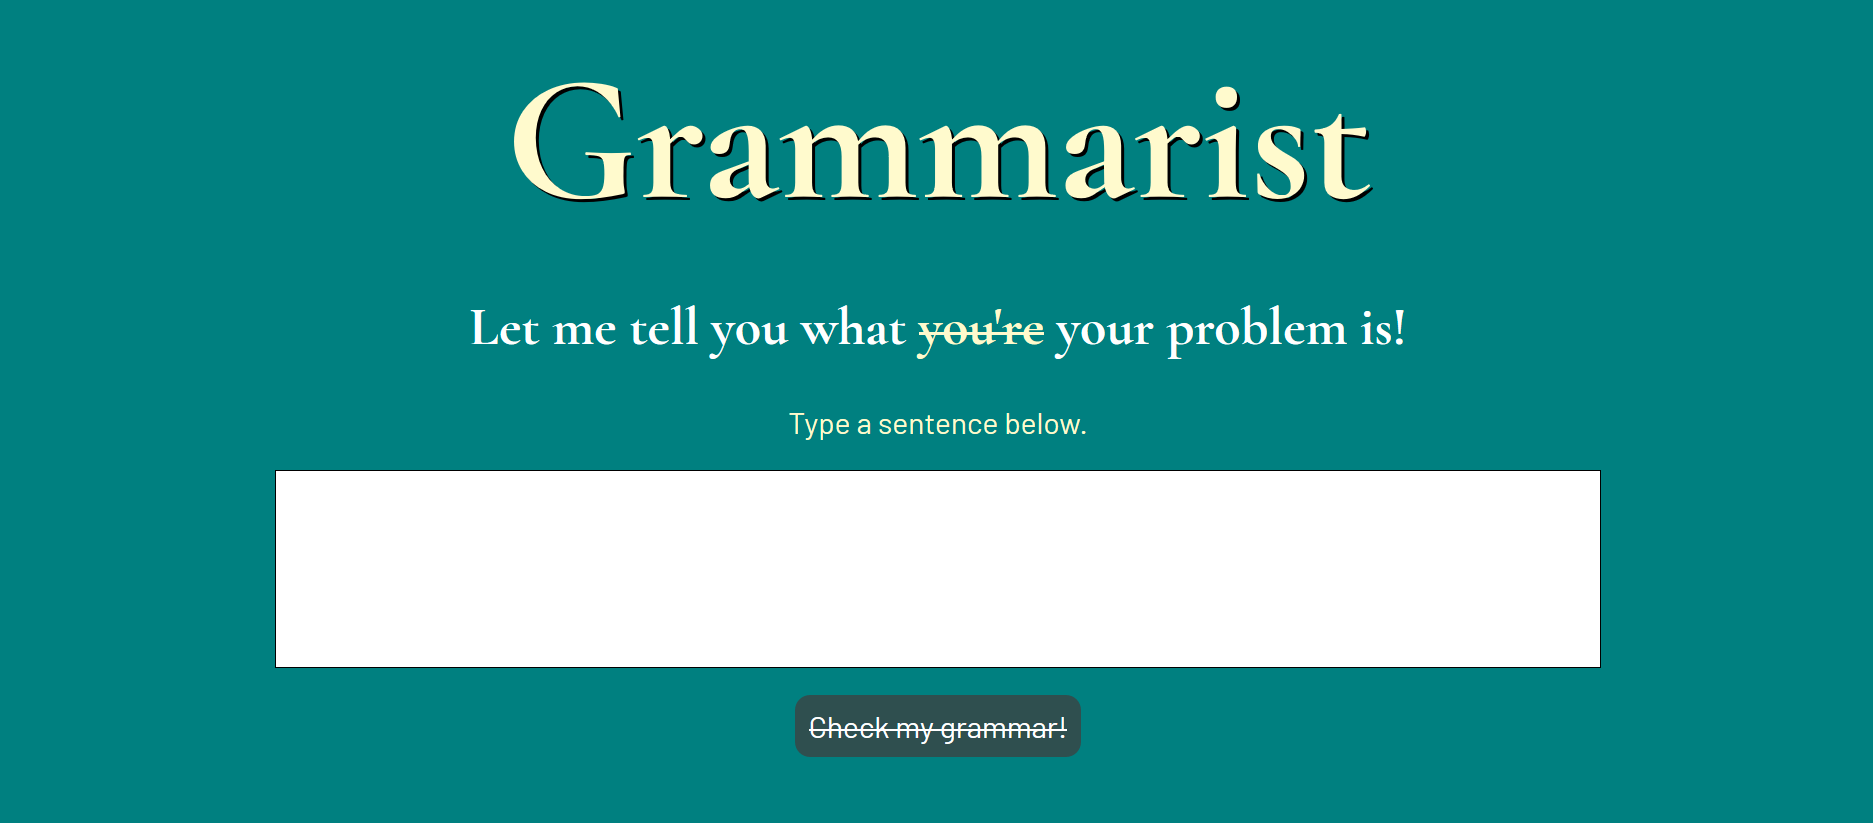 A screenshot of a grammar-checking app called Grammarist